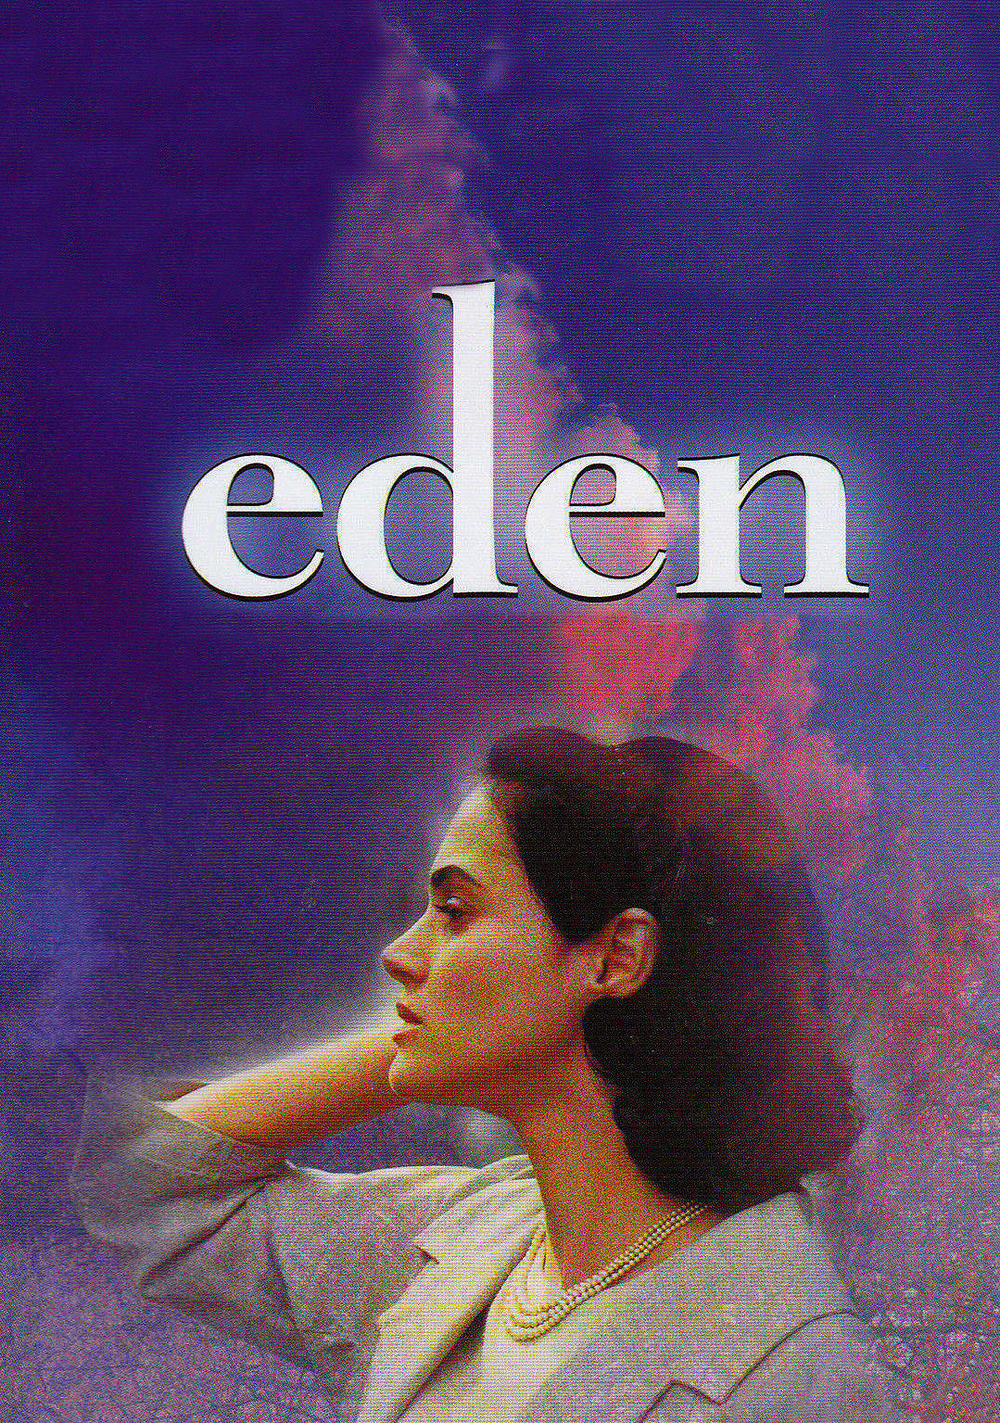 affiche du film Eden